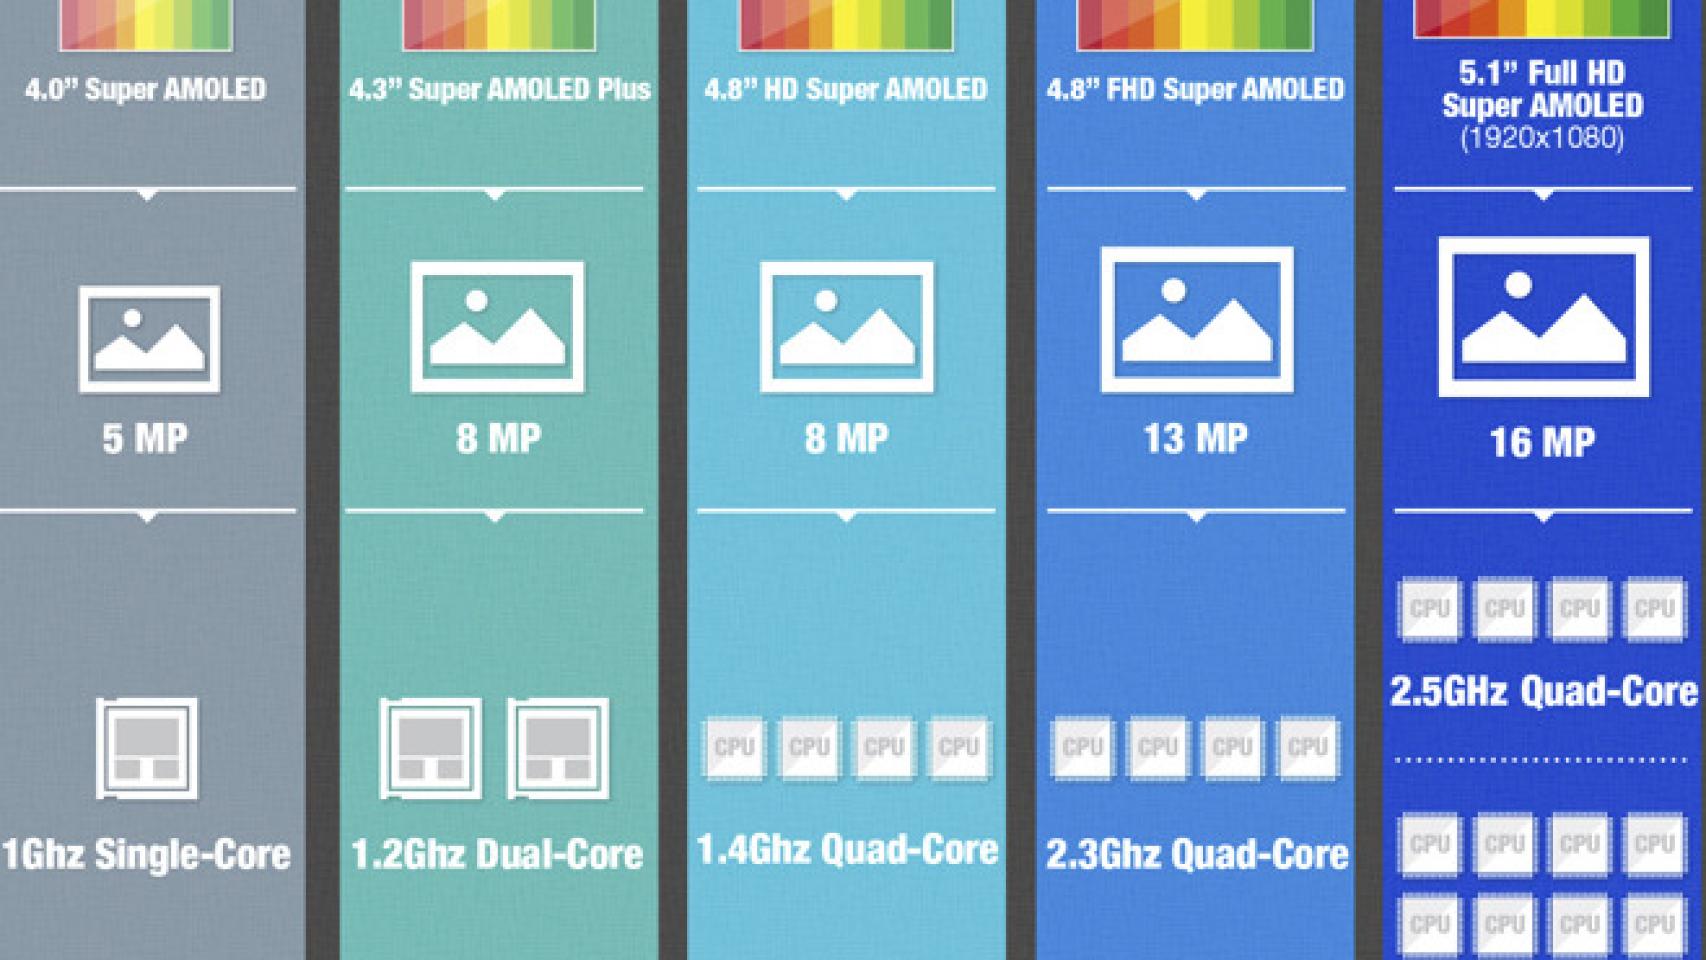 ¿Qué diferencia hay entre el procesador del Galaxy S5 y el del Xperia Z2?